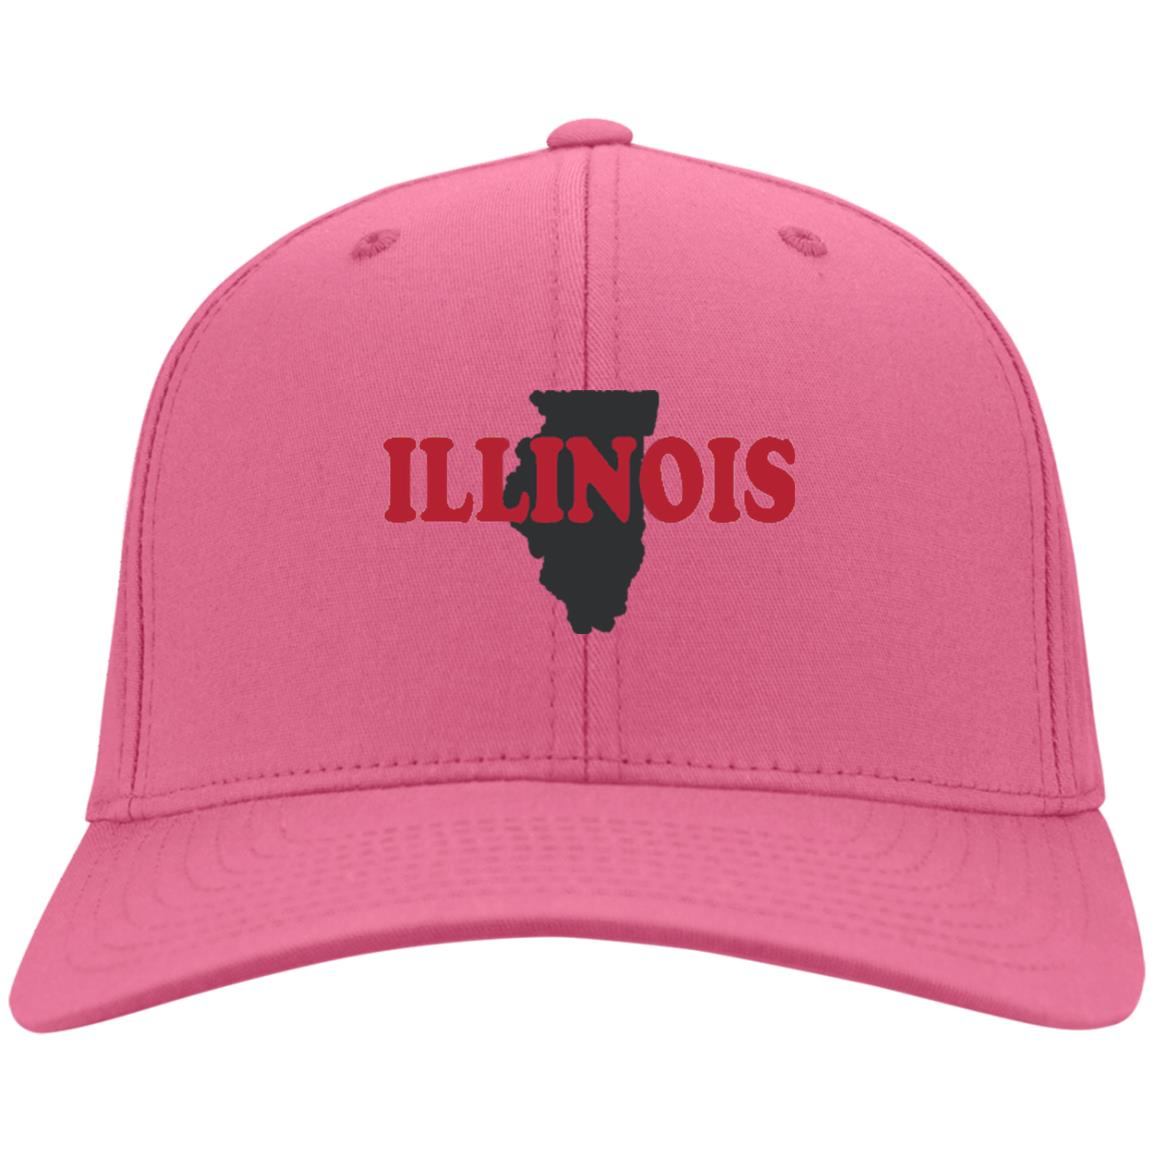 Illinois State Hat